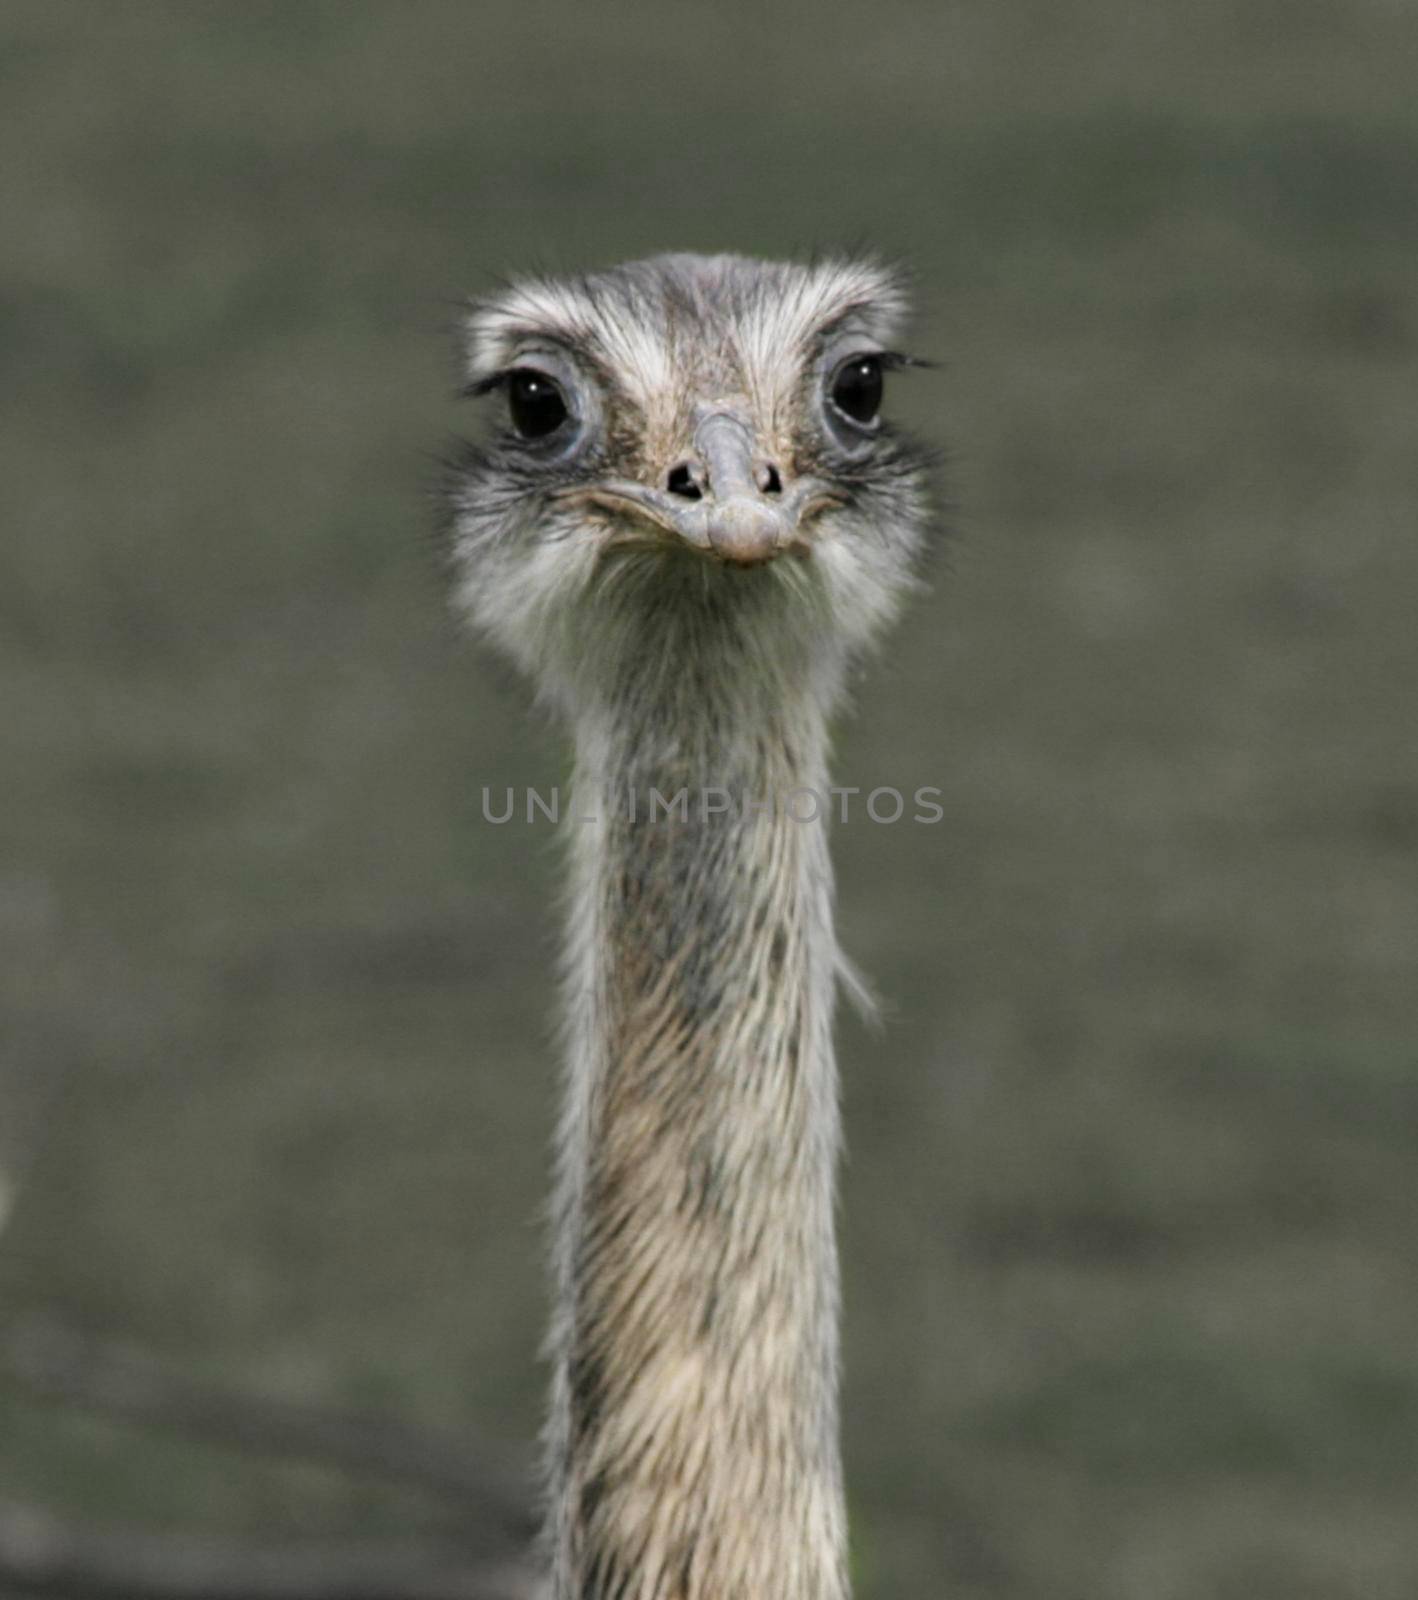 A close-up portrait of an ostrich bird